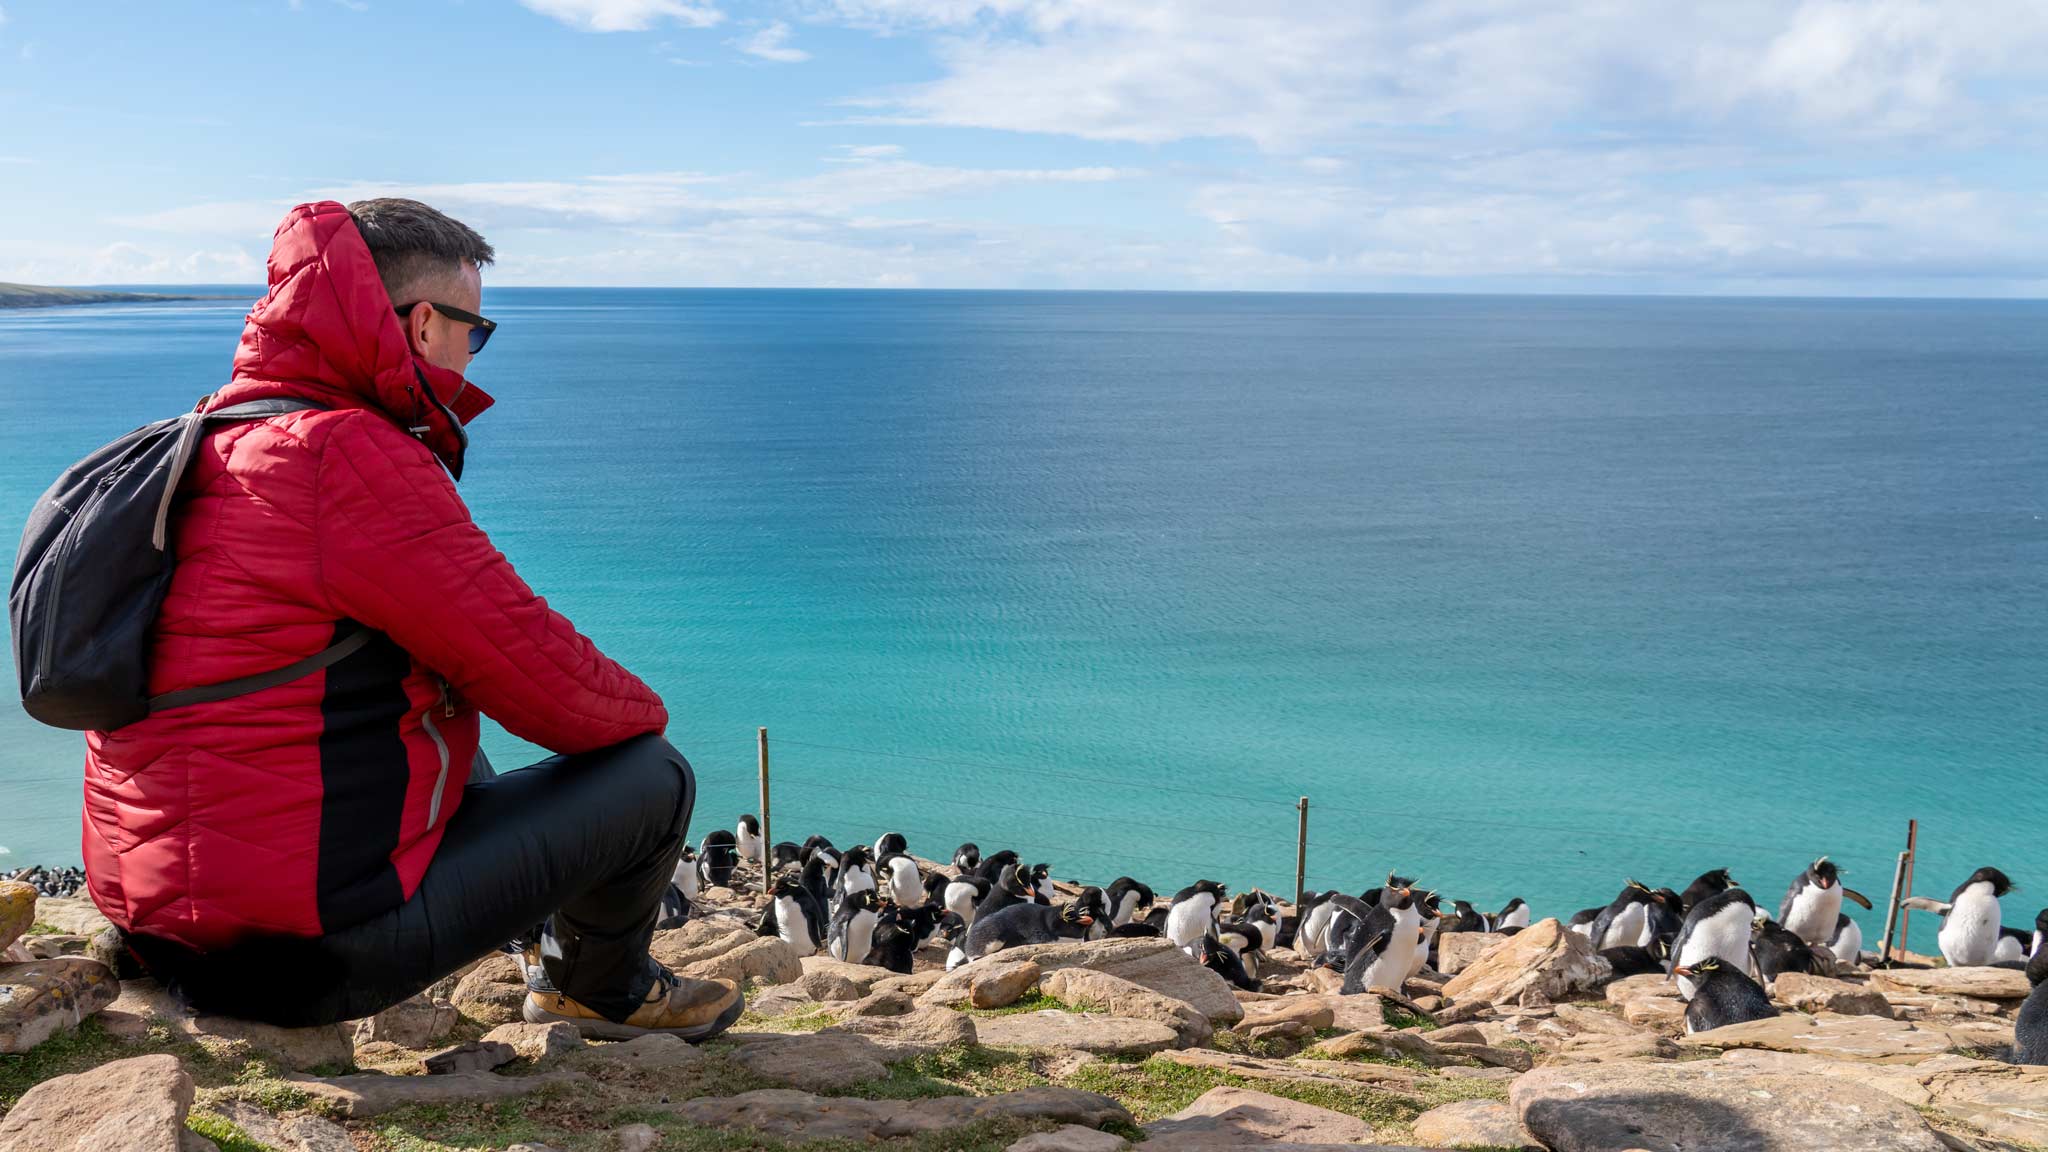 丹是坐在左边的红袄,与湛蓝的海水在各色彩超越他。一群rockhopped企鹅分布在岩石上。